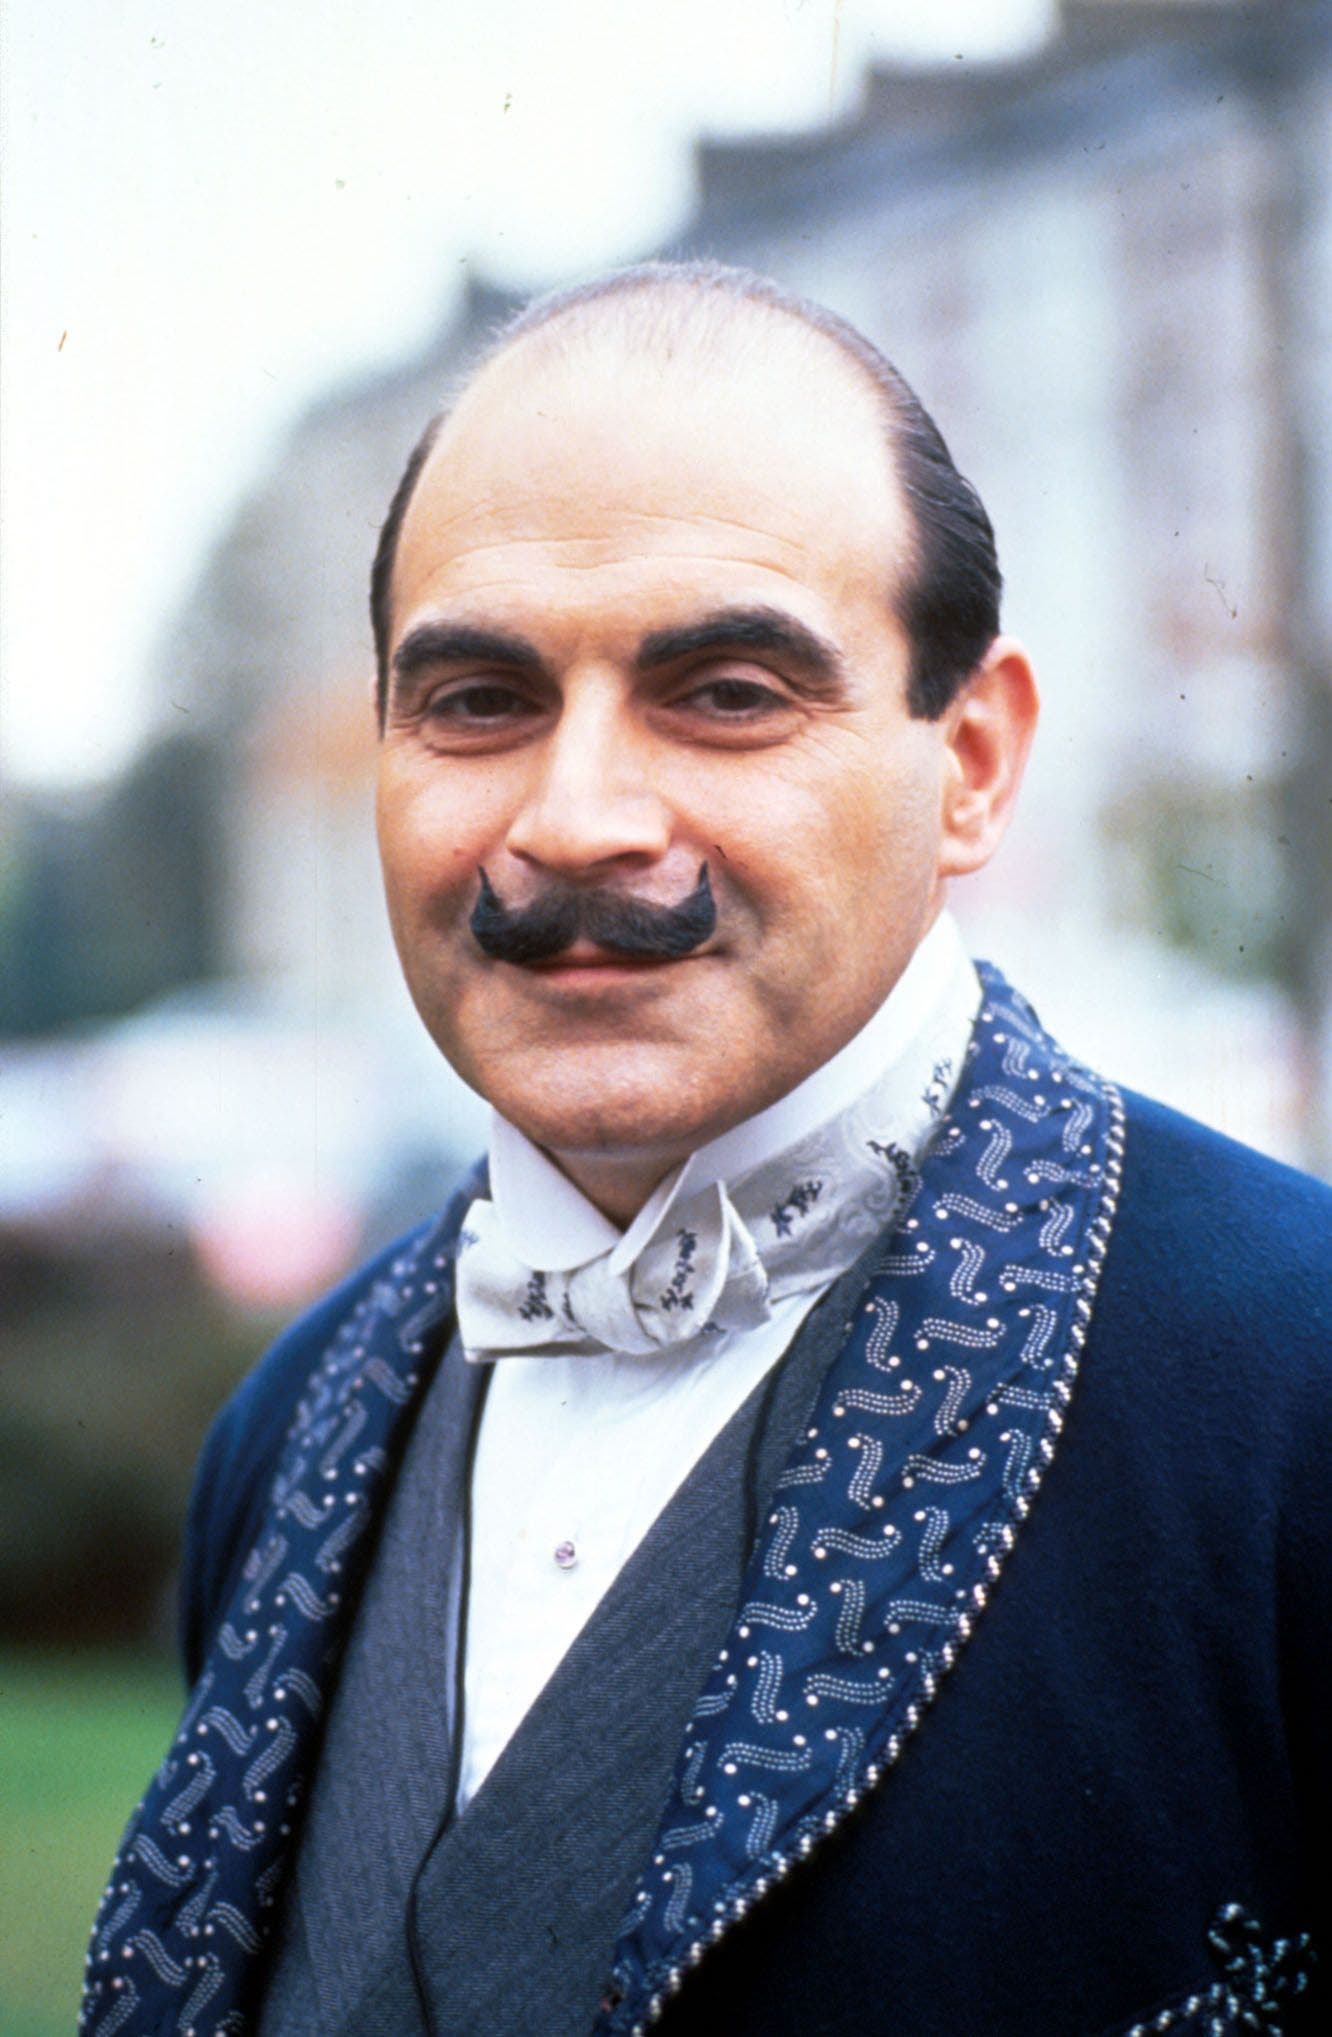 David Suchet verkörperte den Meisterdetektiv in der britischen TV-Serie «Agatha Christie's Poirot» (1989 - 2013).